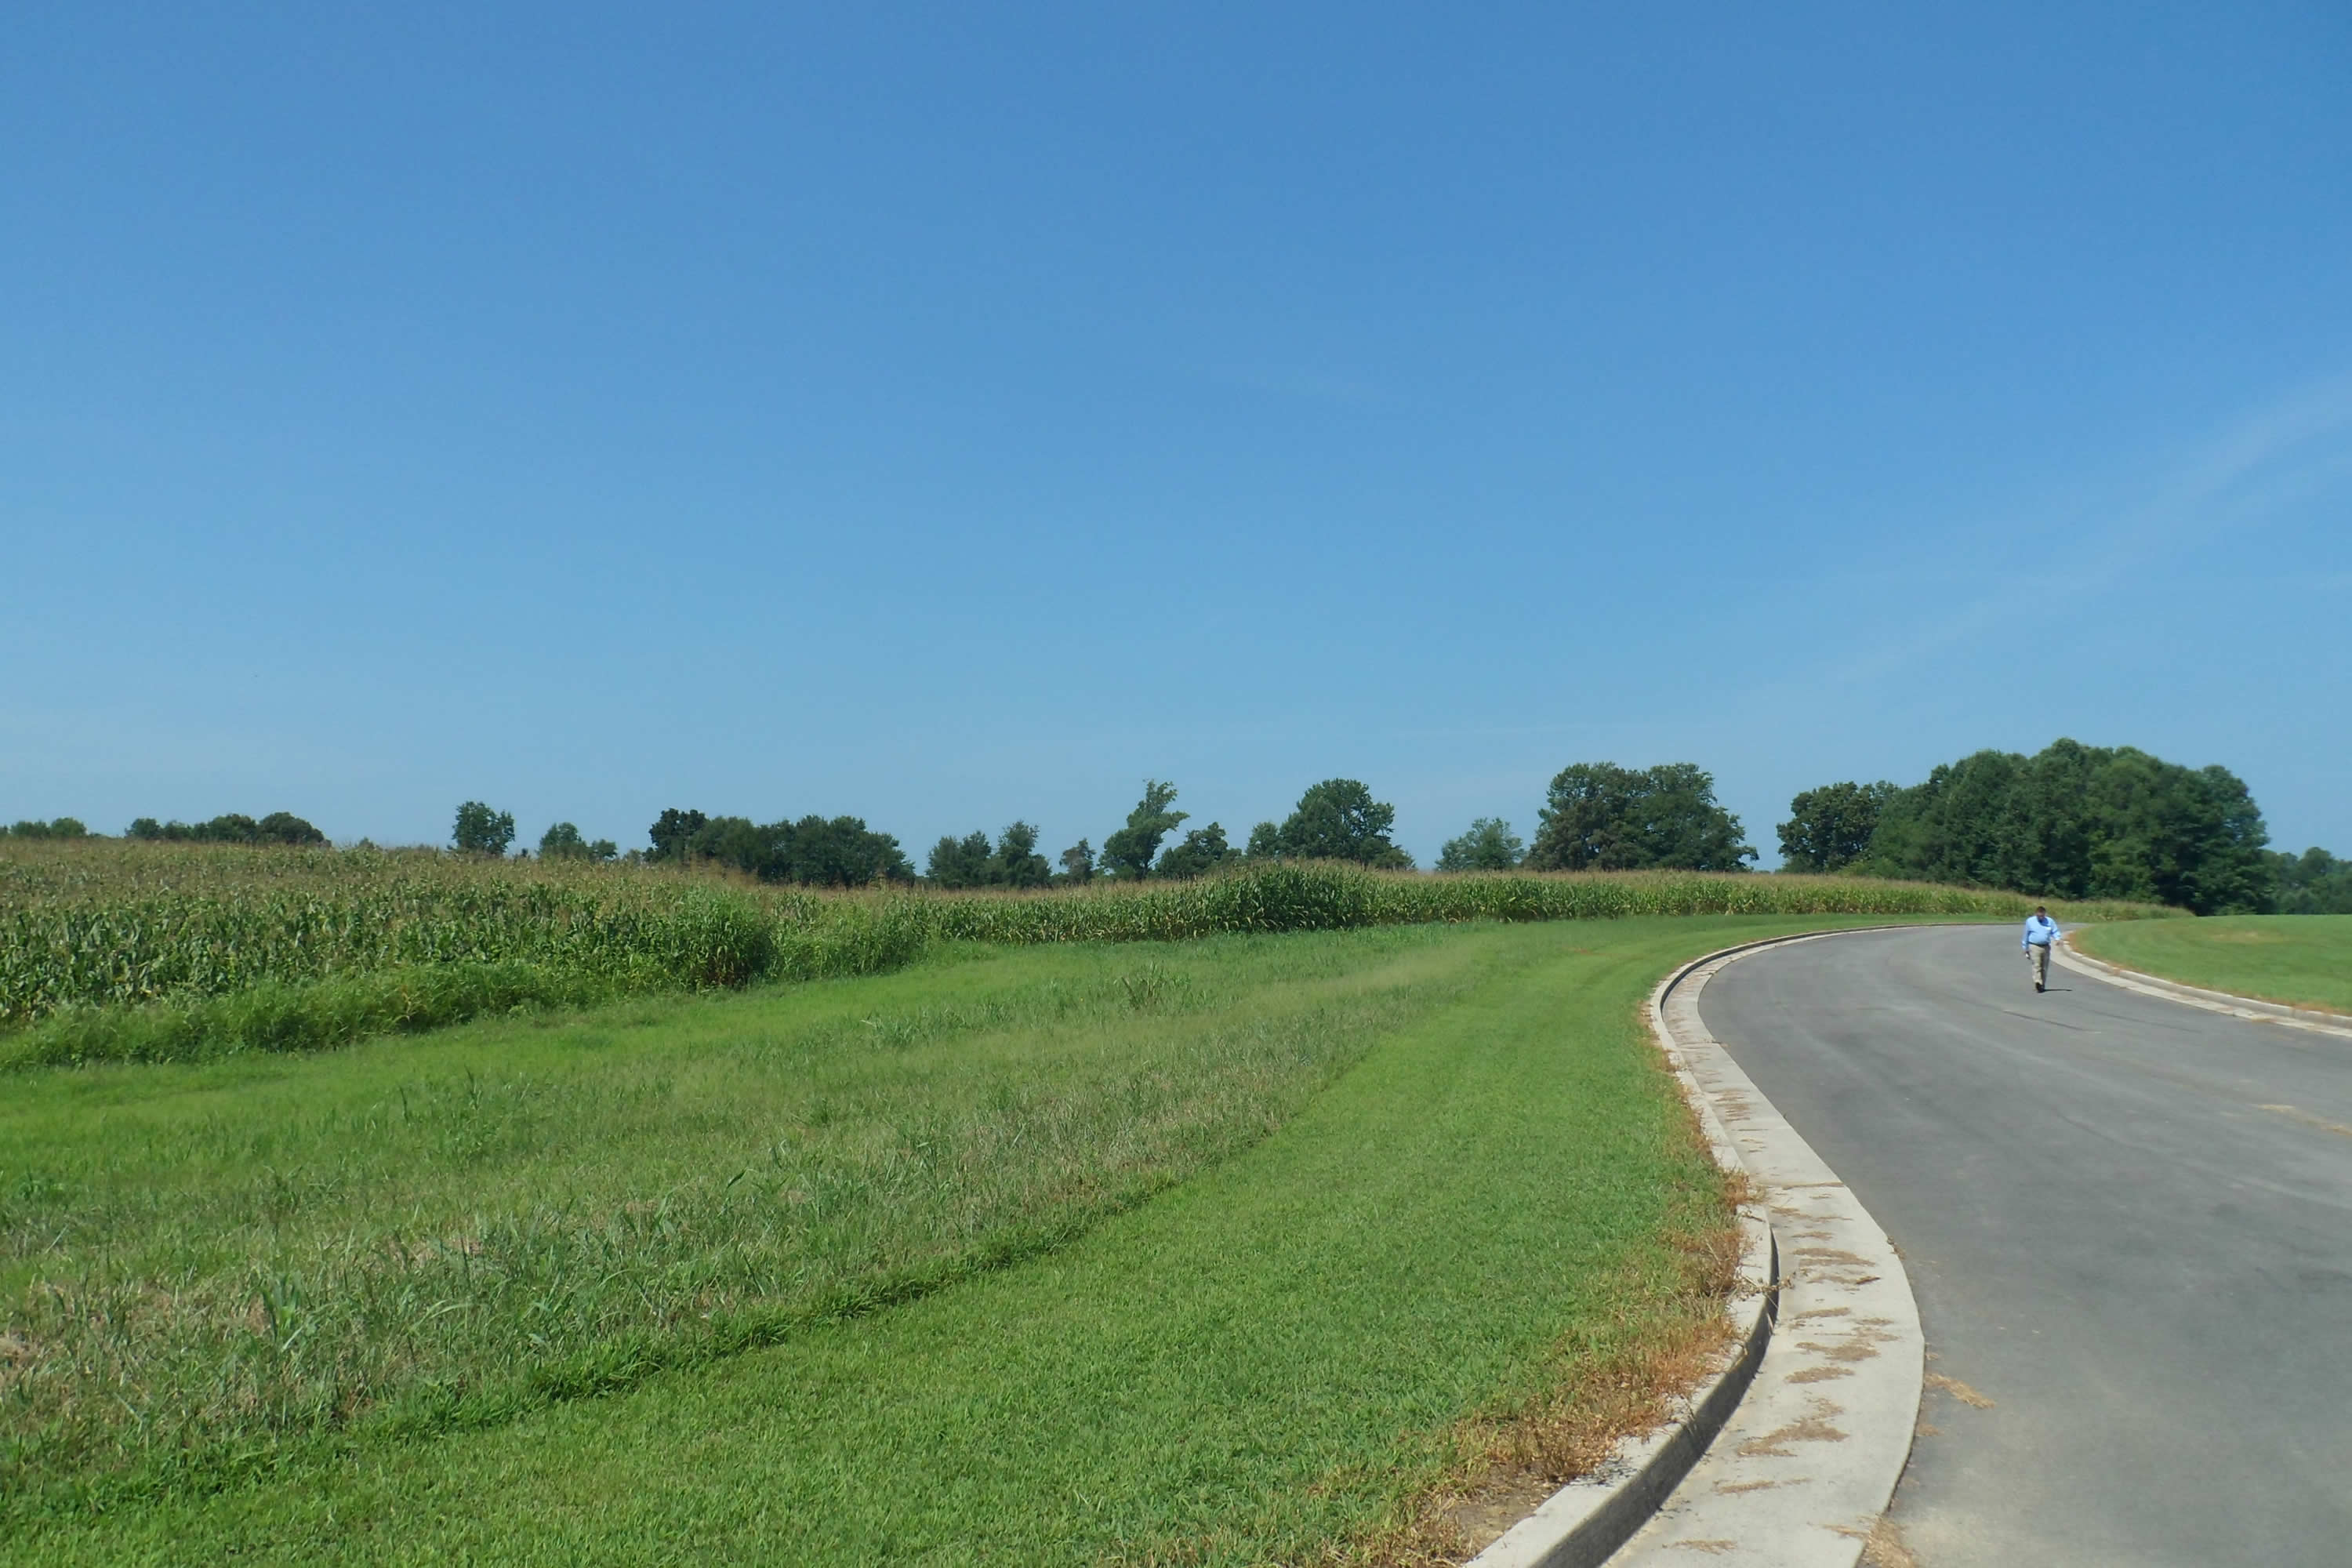 Roadway next to a grass field